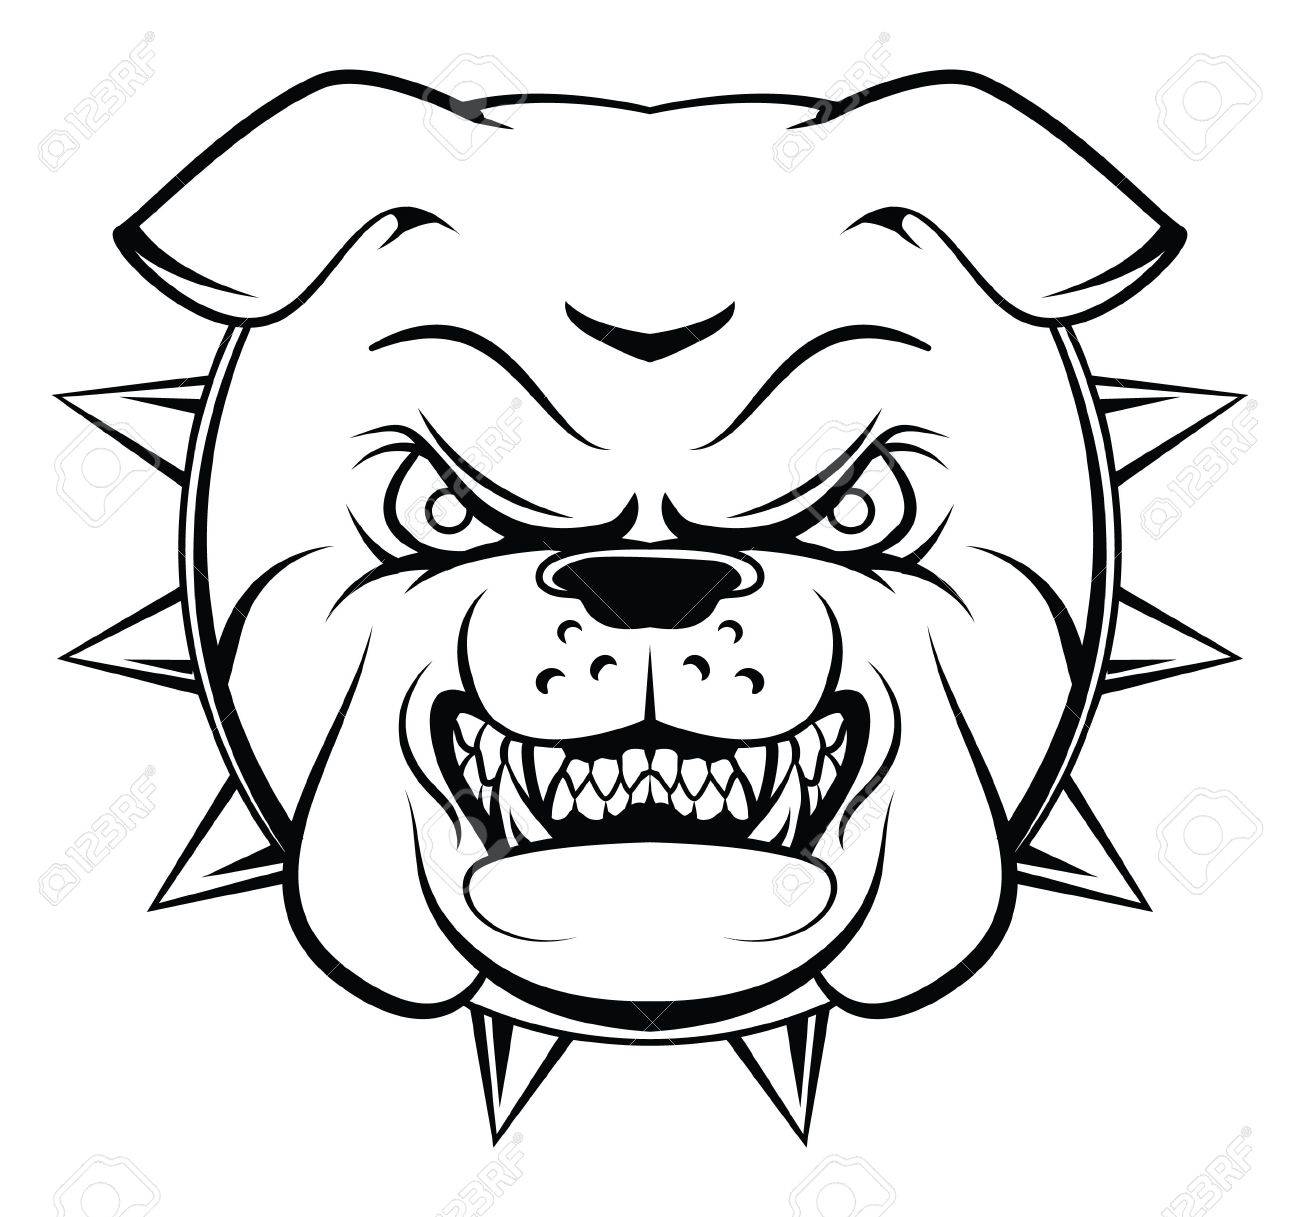 Bulldog Face Drawing at GetDrawings | Free download